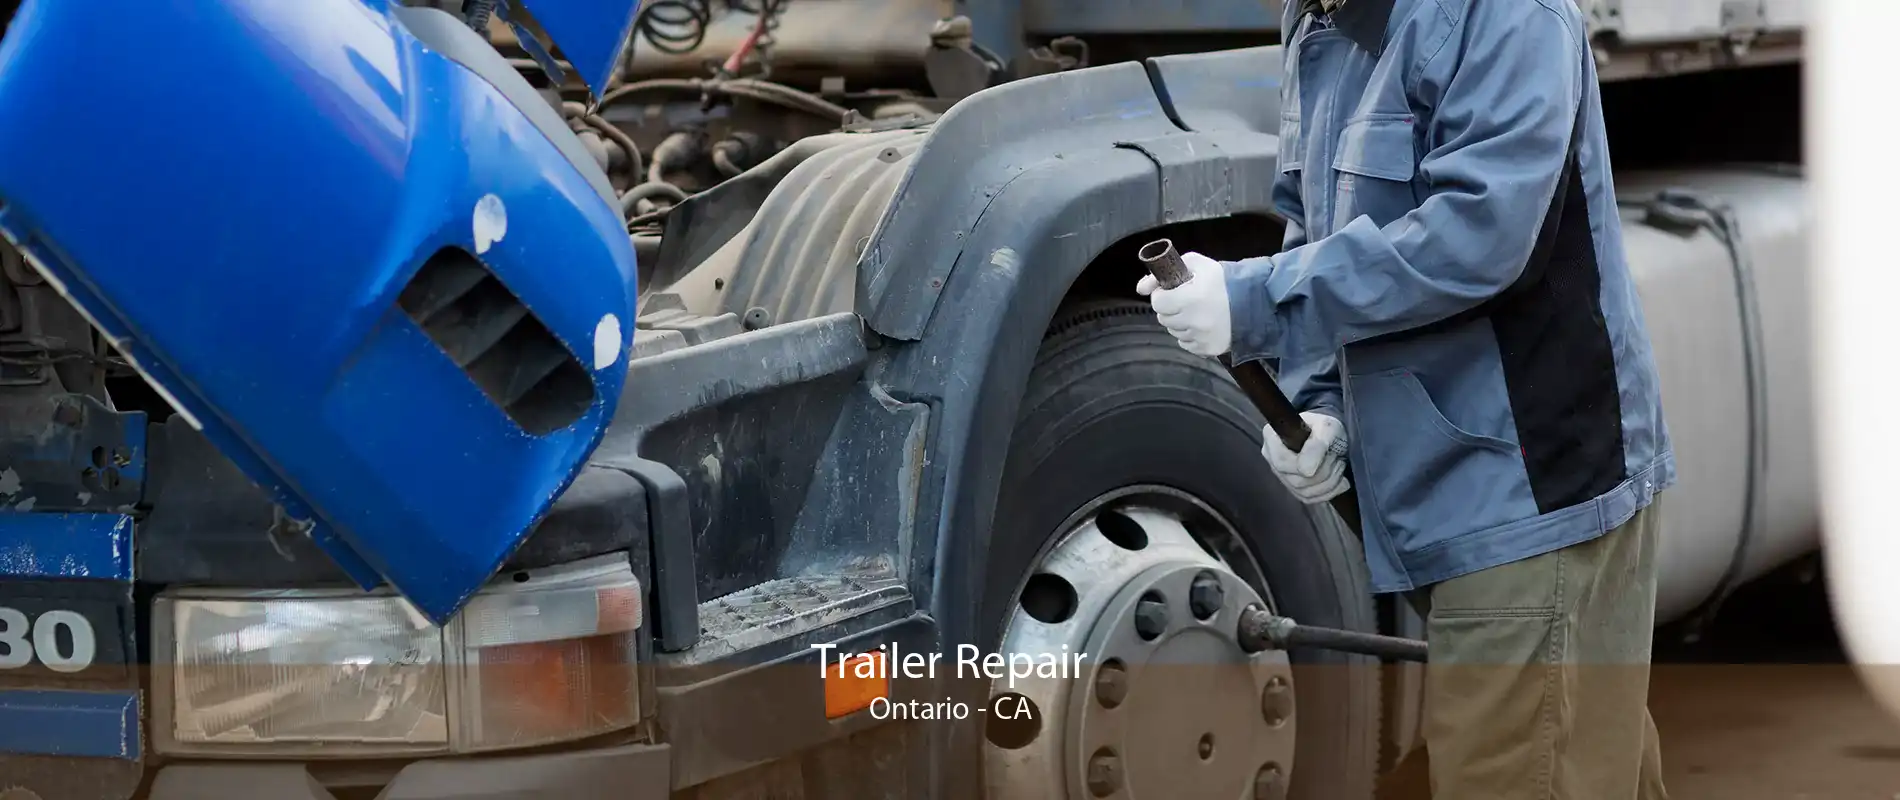 Trailer Repair Ontario - CA